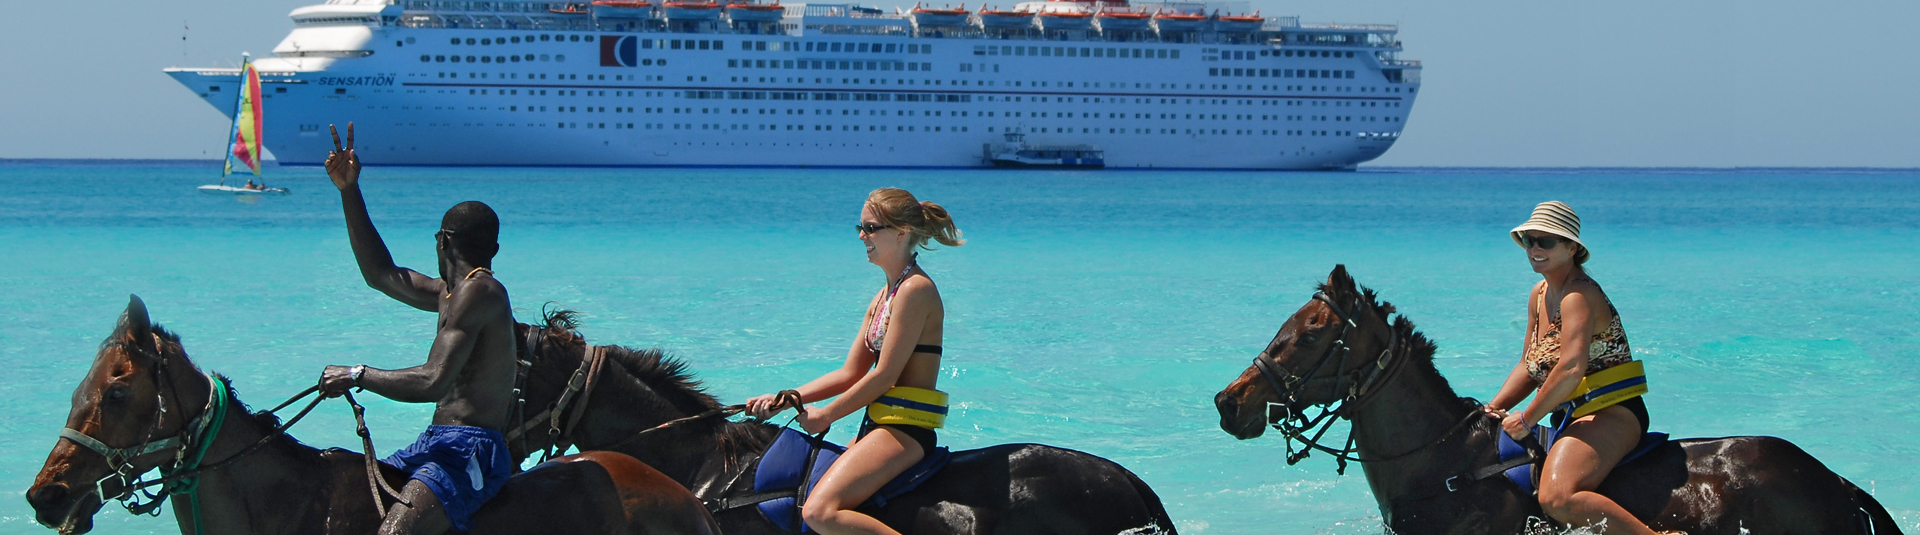 Jamaica Tours Cruise SHip Montego Bay